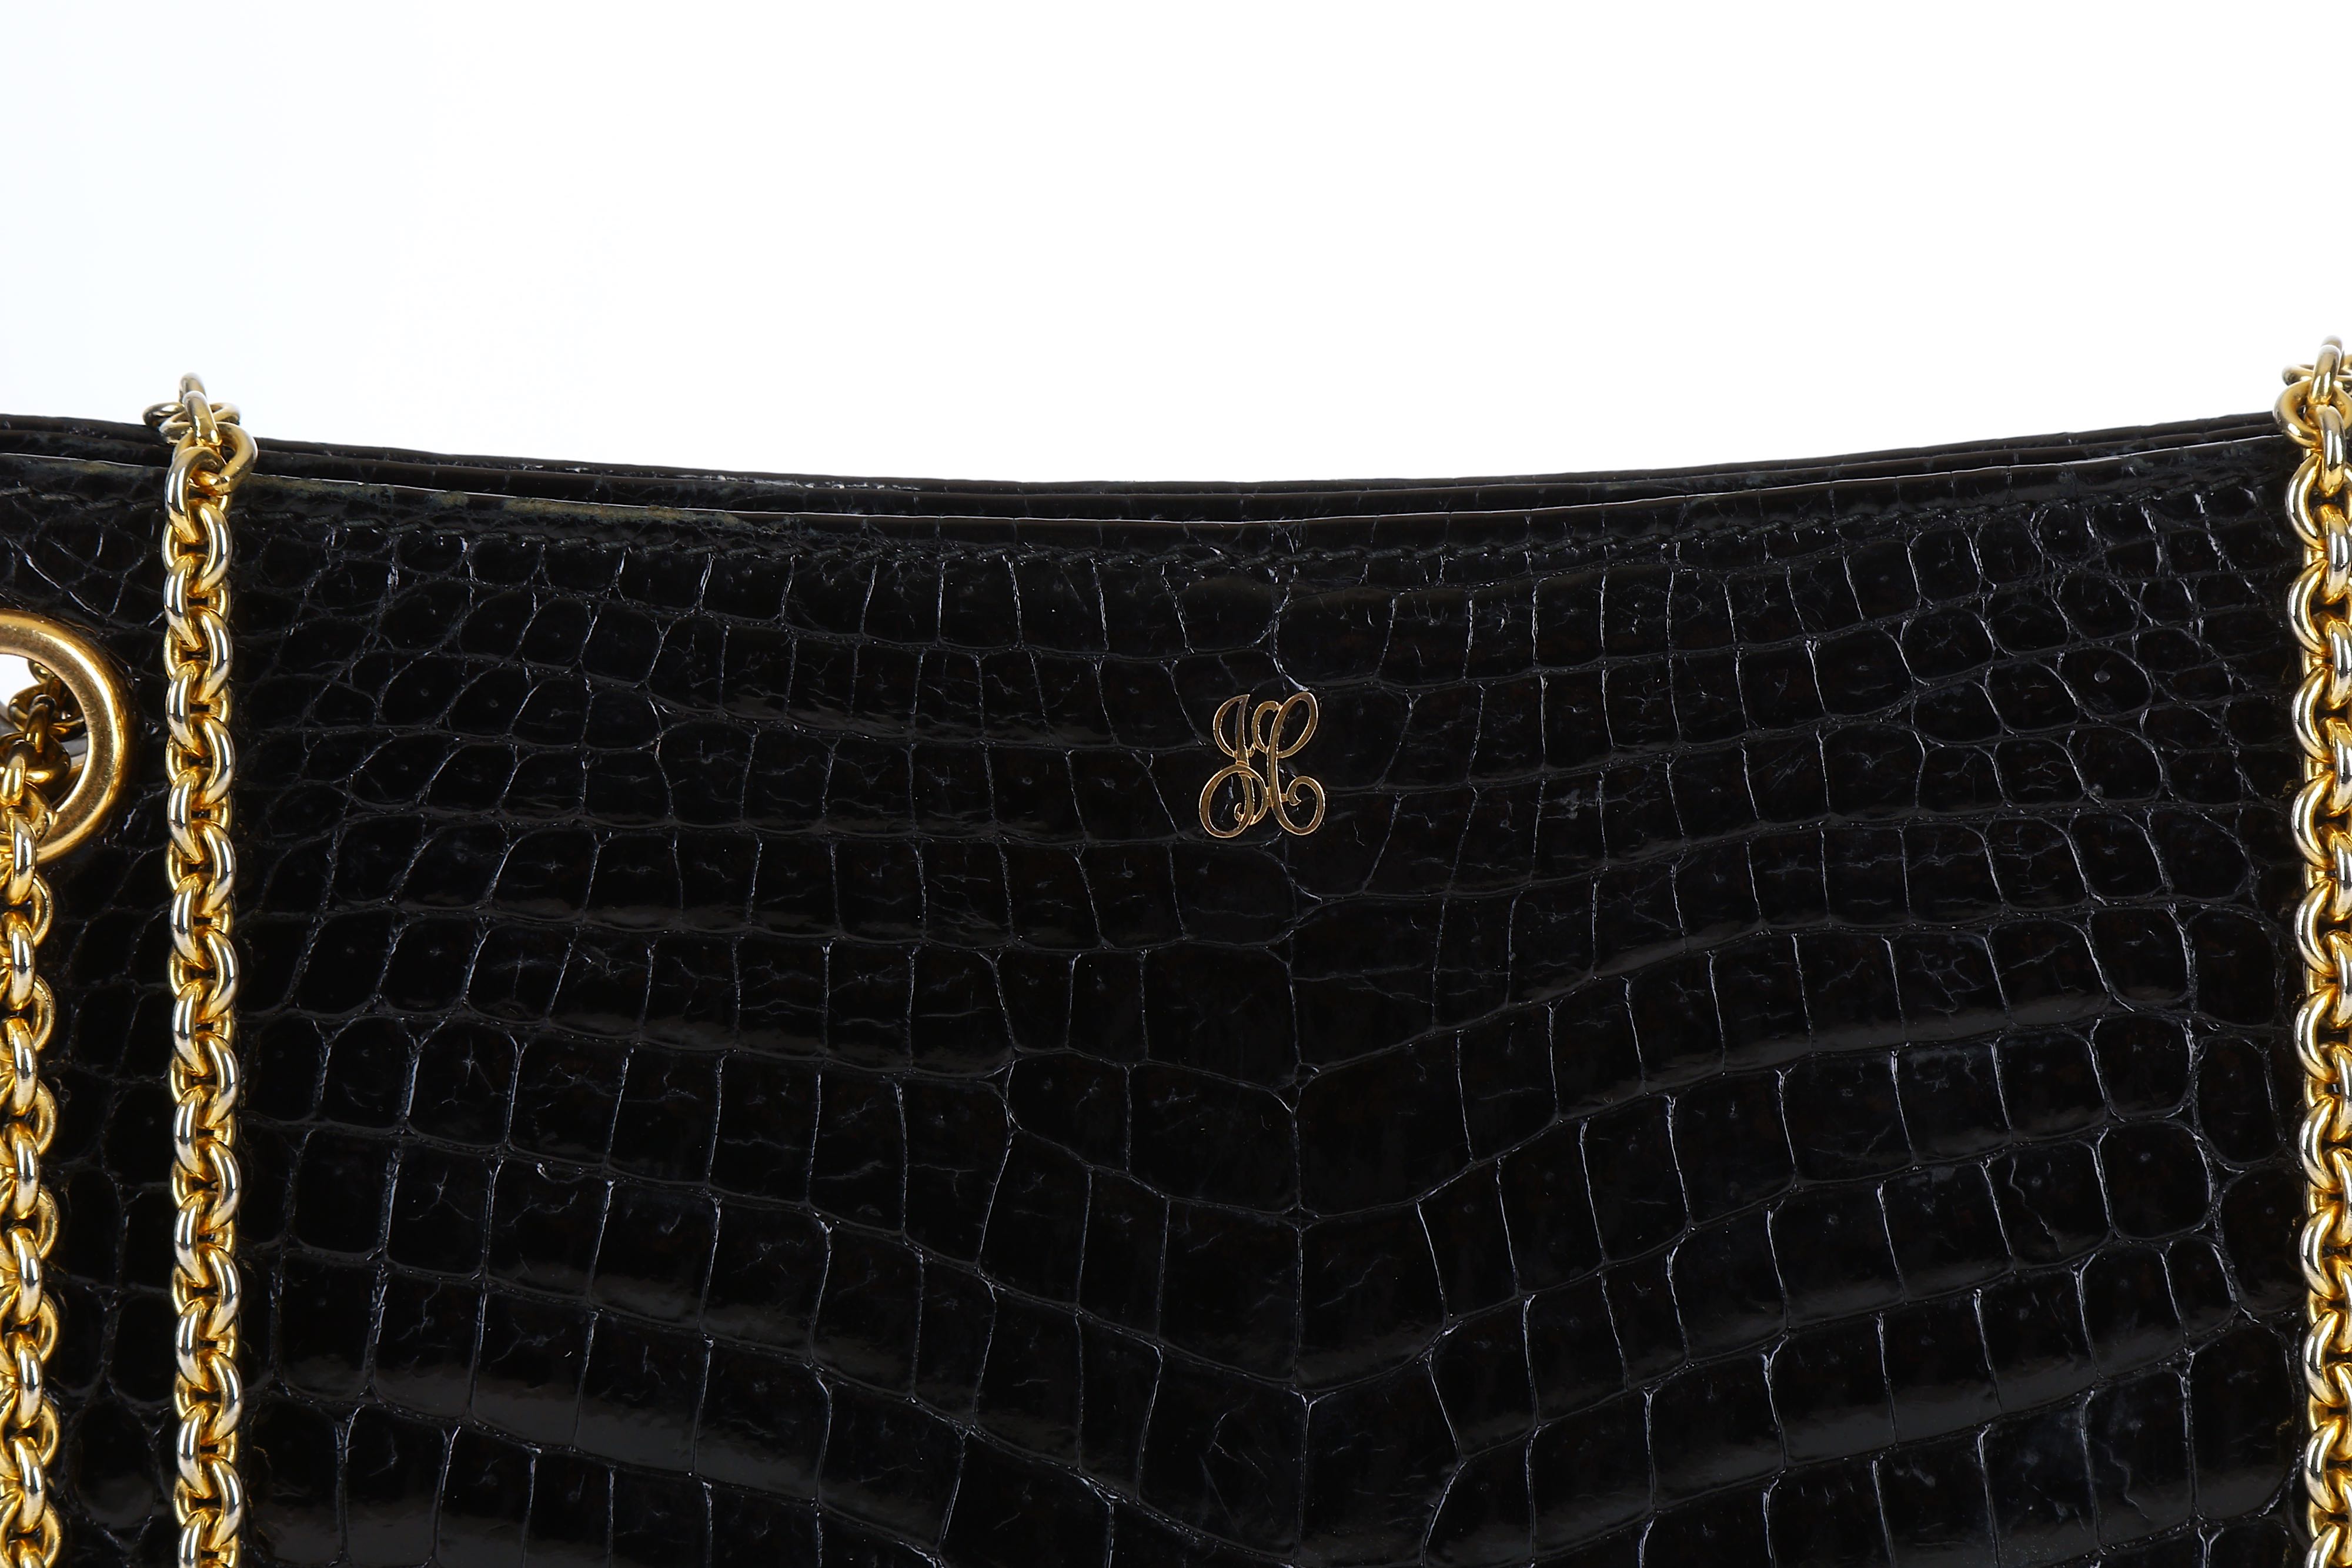 Gg running crocodile handbag Gucci Gold in Crocodile - 25787438